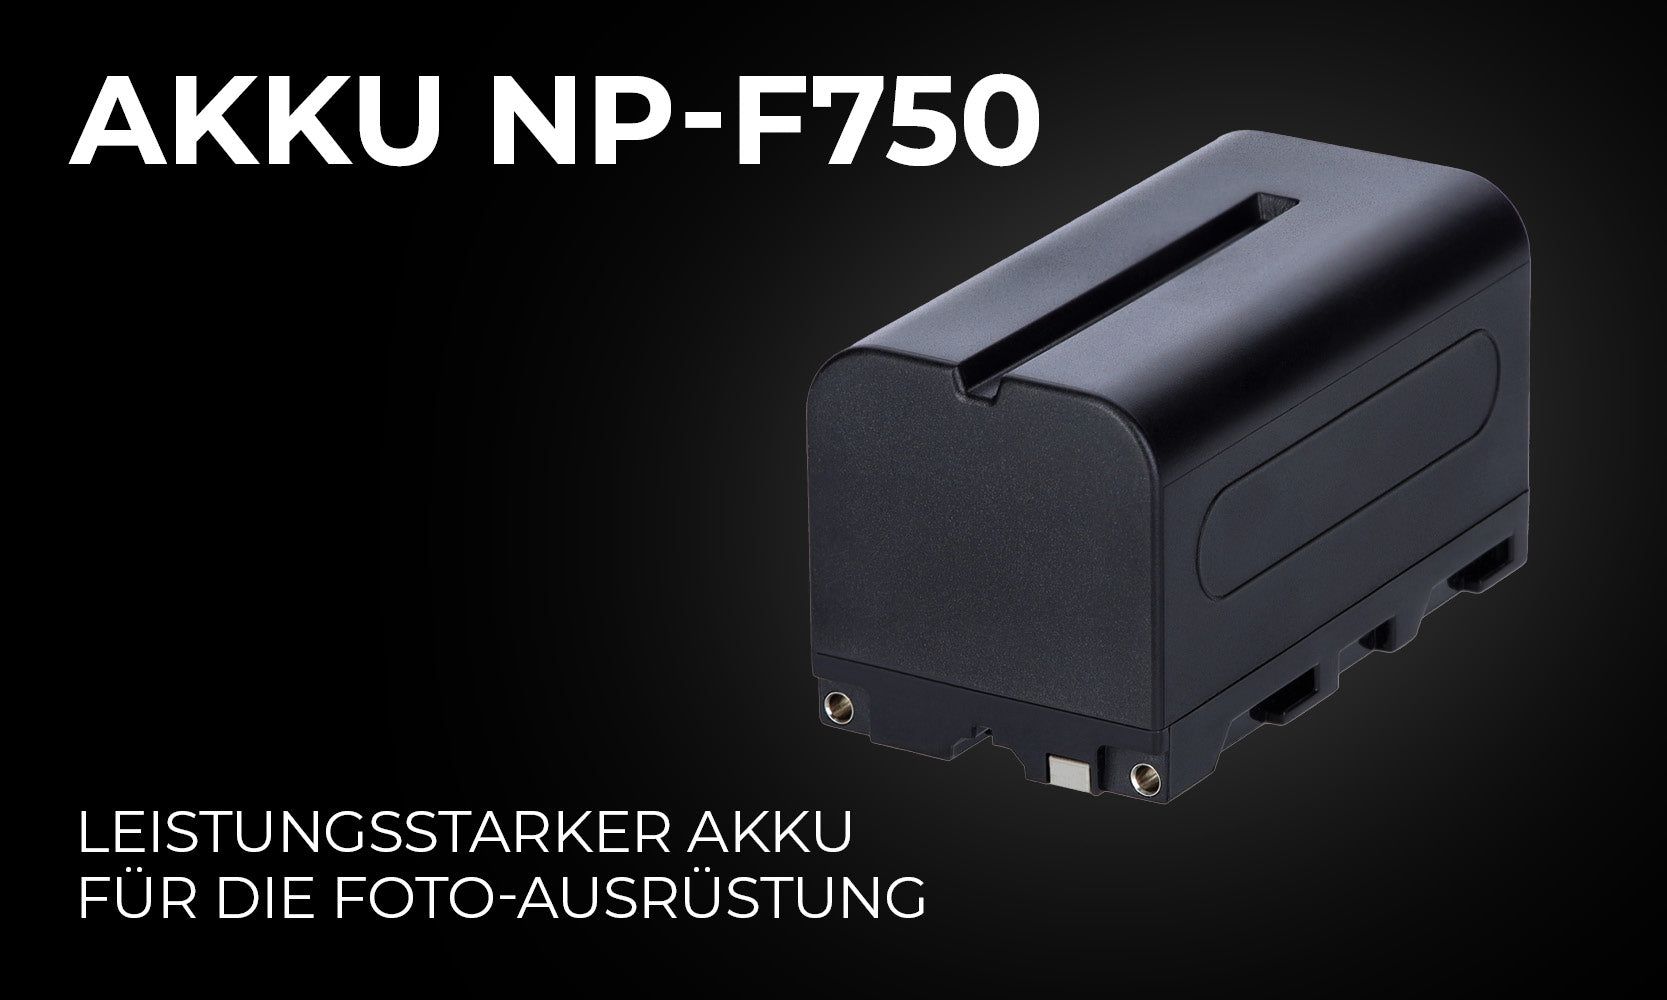 Akku Typ Sony NP-F750 - Leistungsstarker Akku für die Foto-Ausrüstung